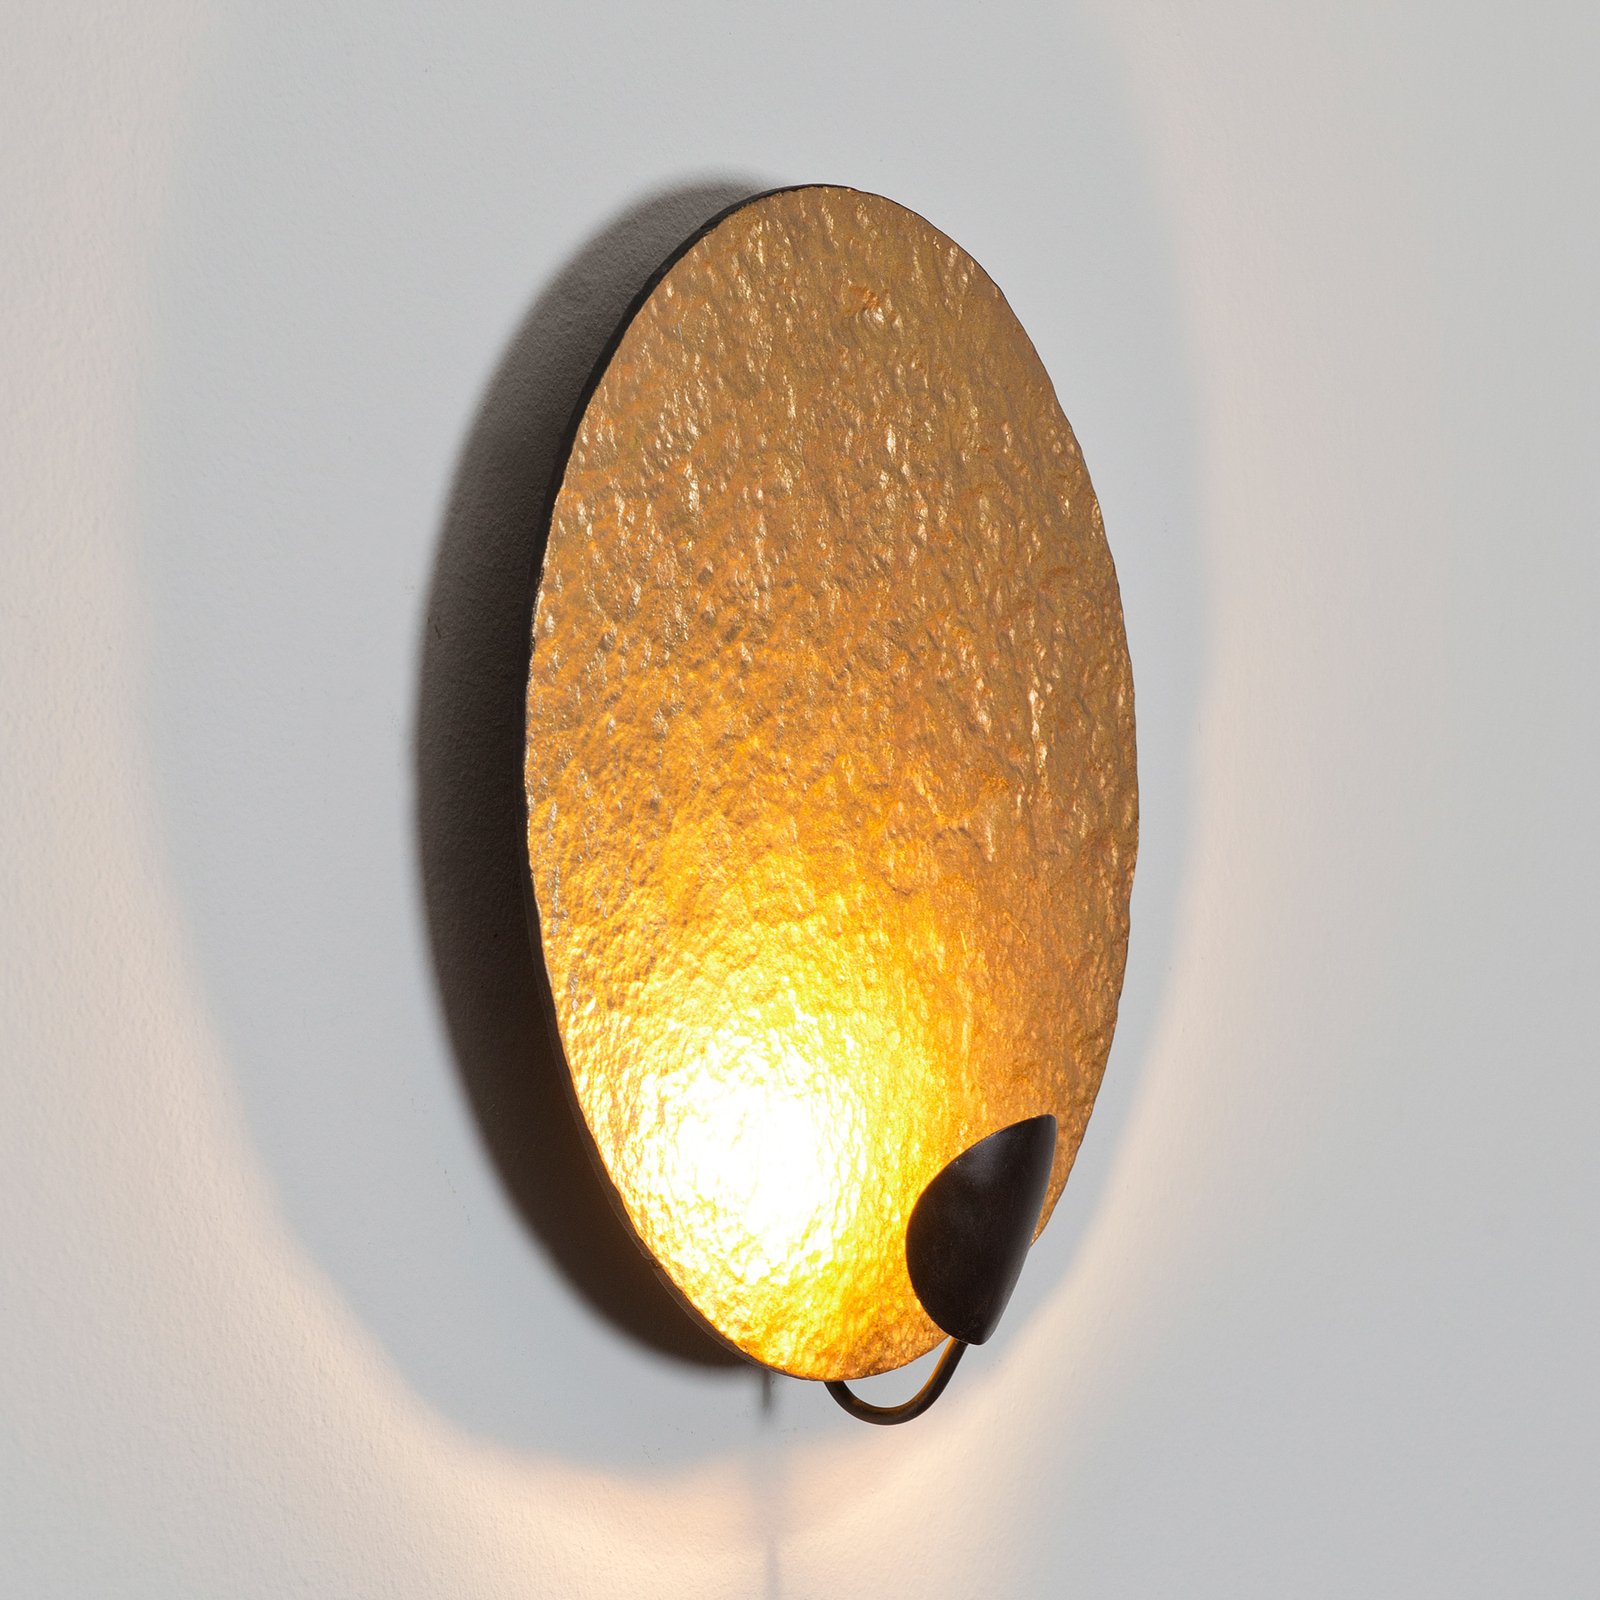 LED-Wandleuchte Traversa, gold glänzend, Ø 35 cm